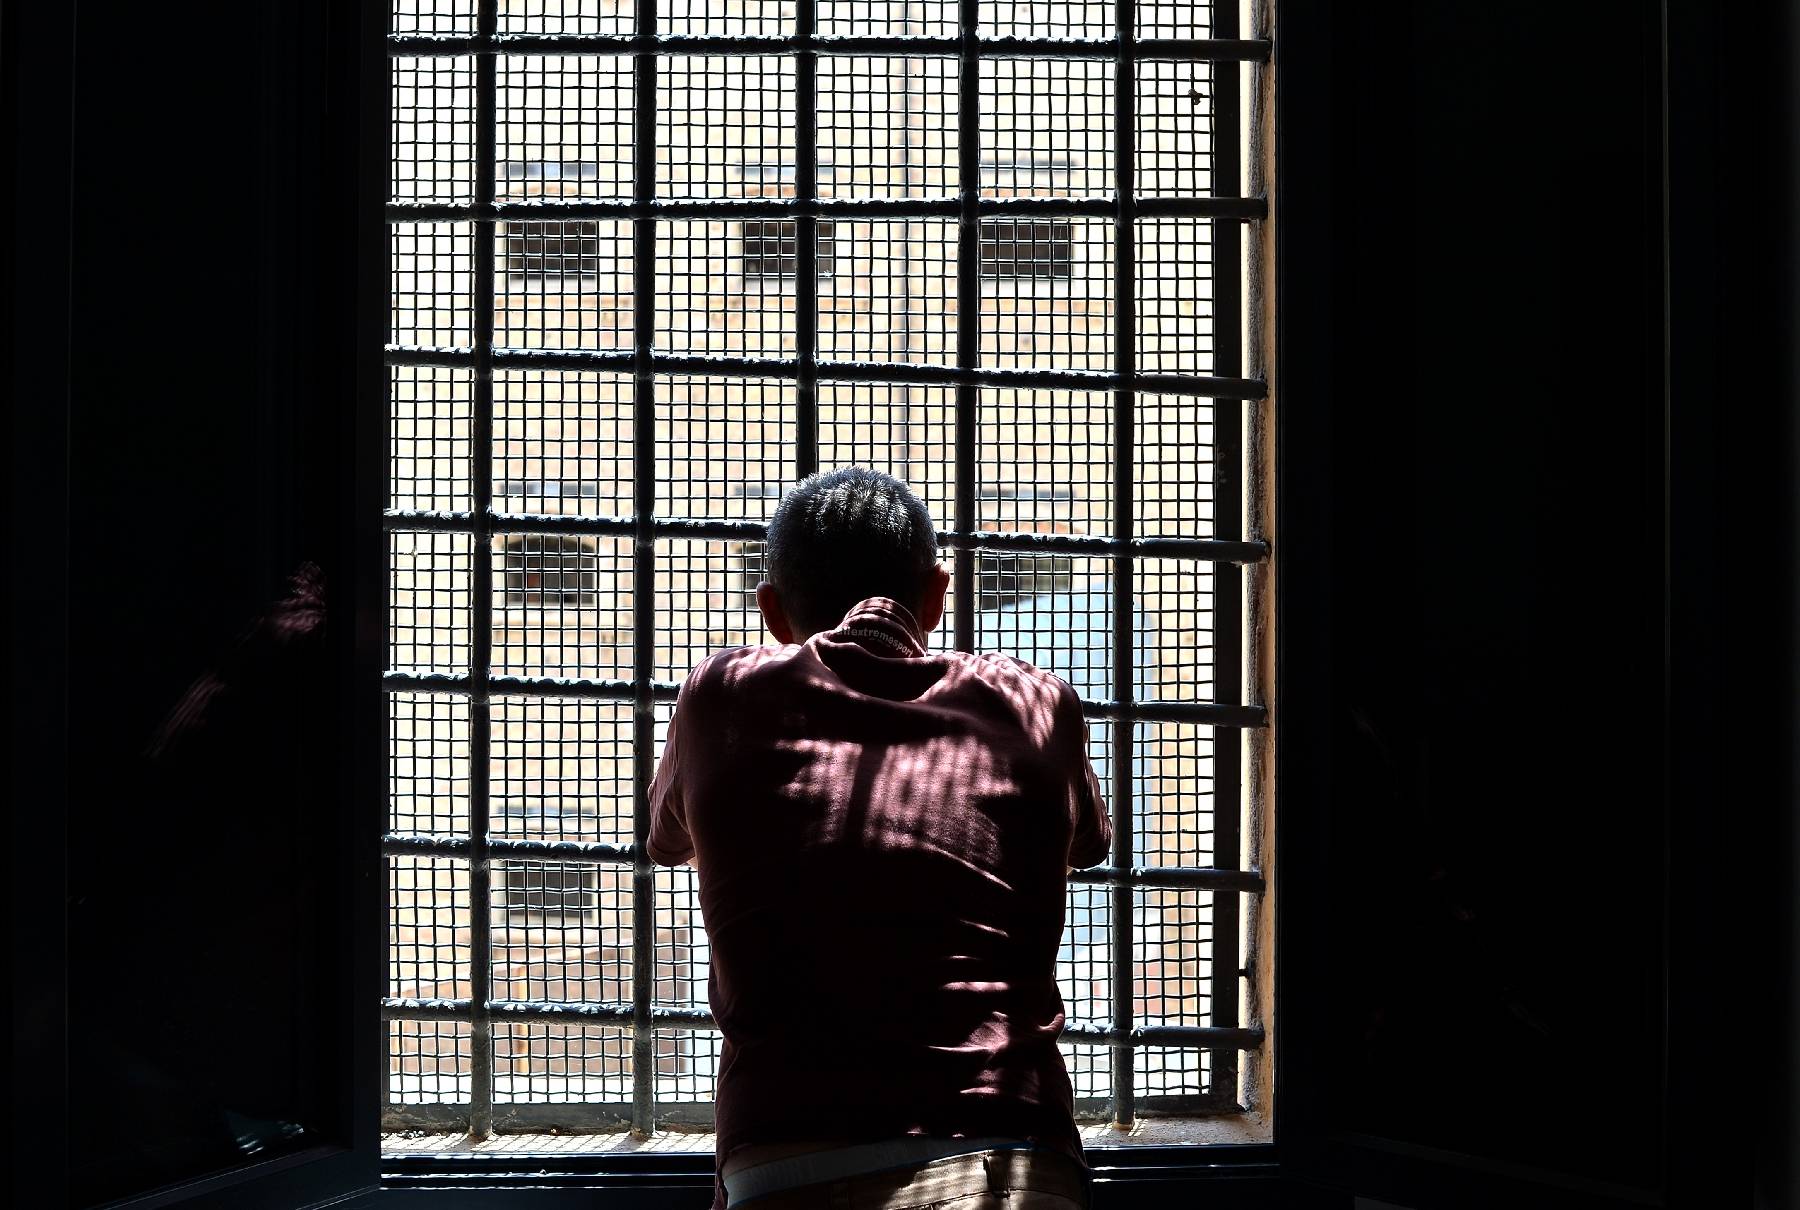 Italie: un anarchiste emprisonné relance le débat sur le régime carcéral sévère